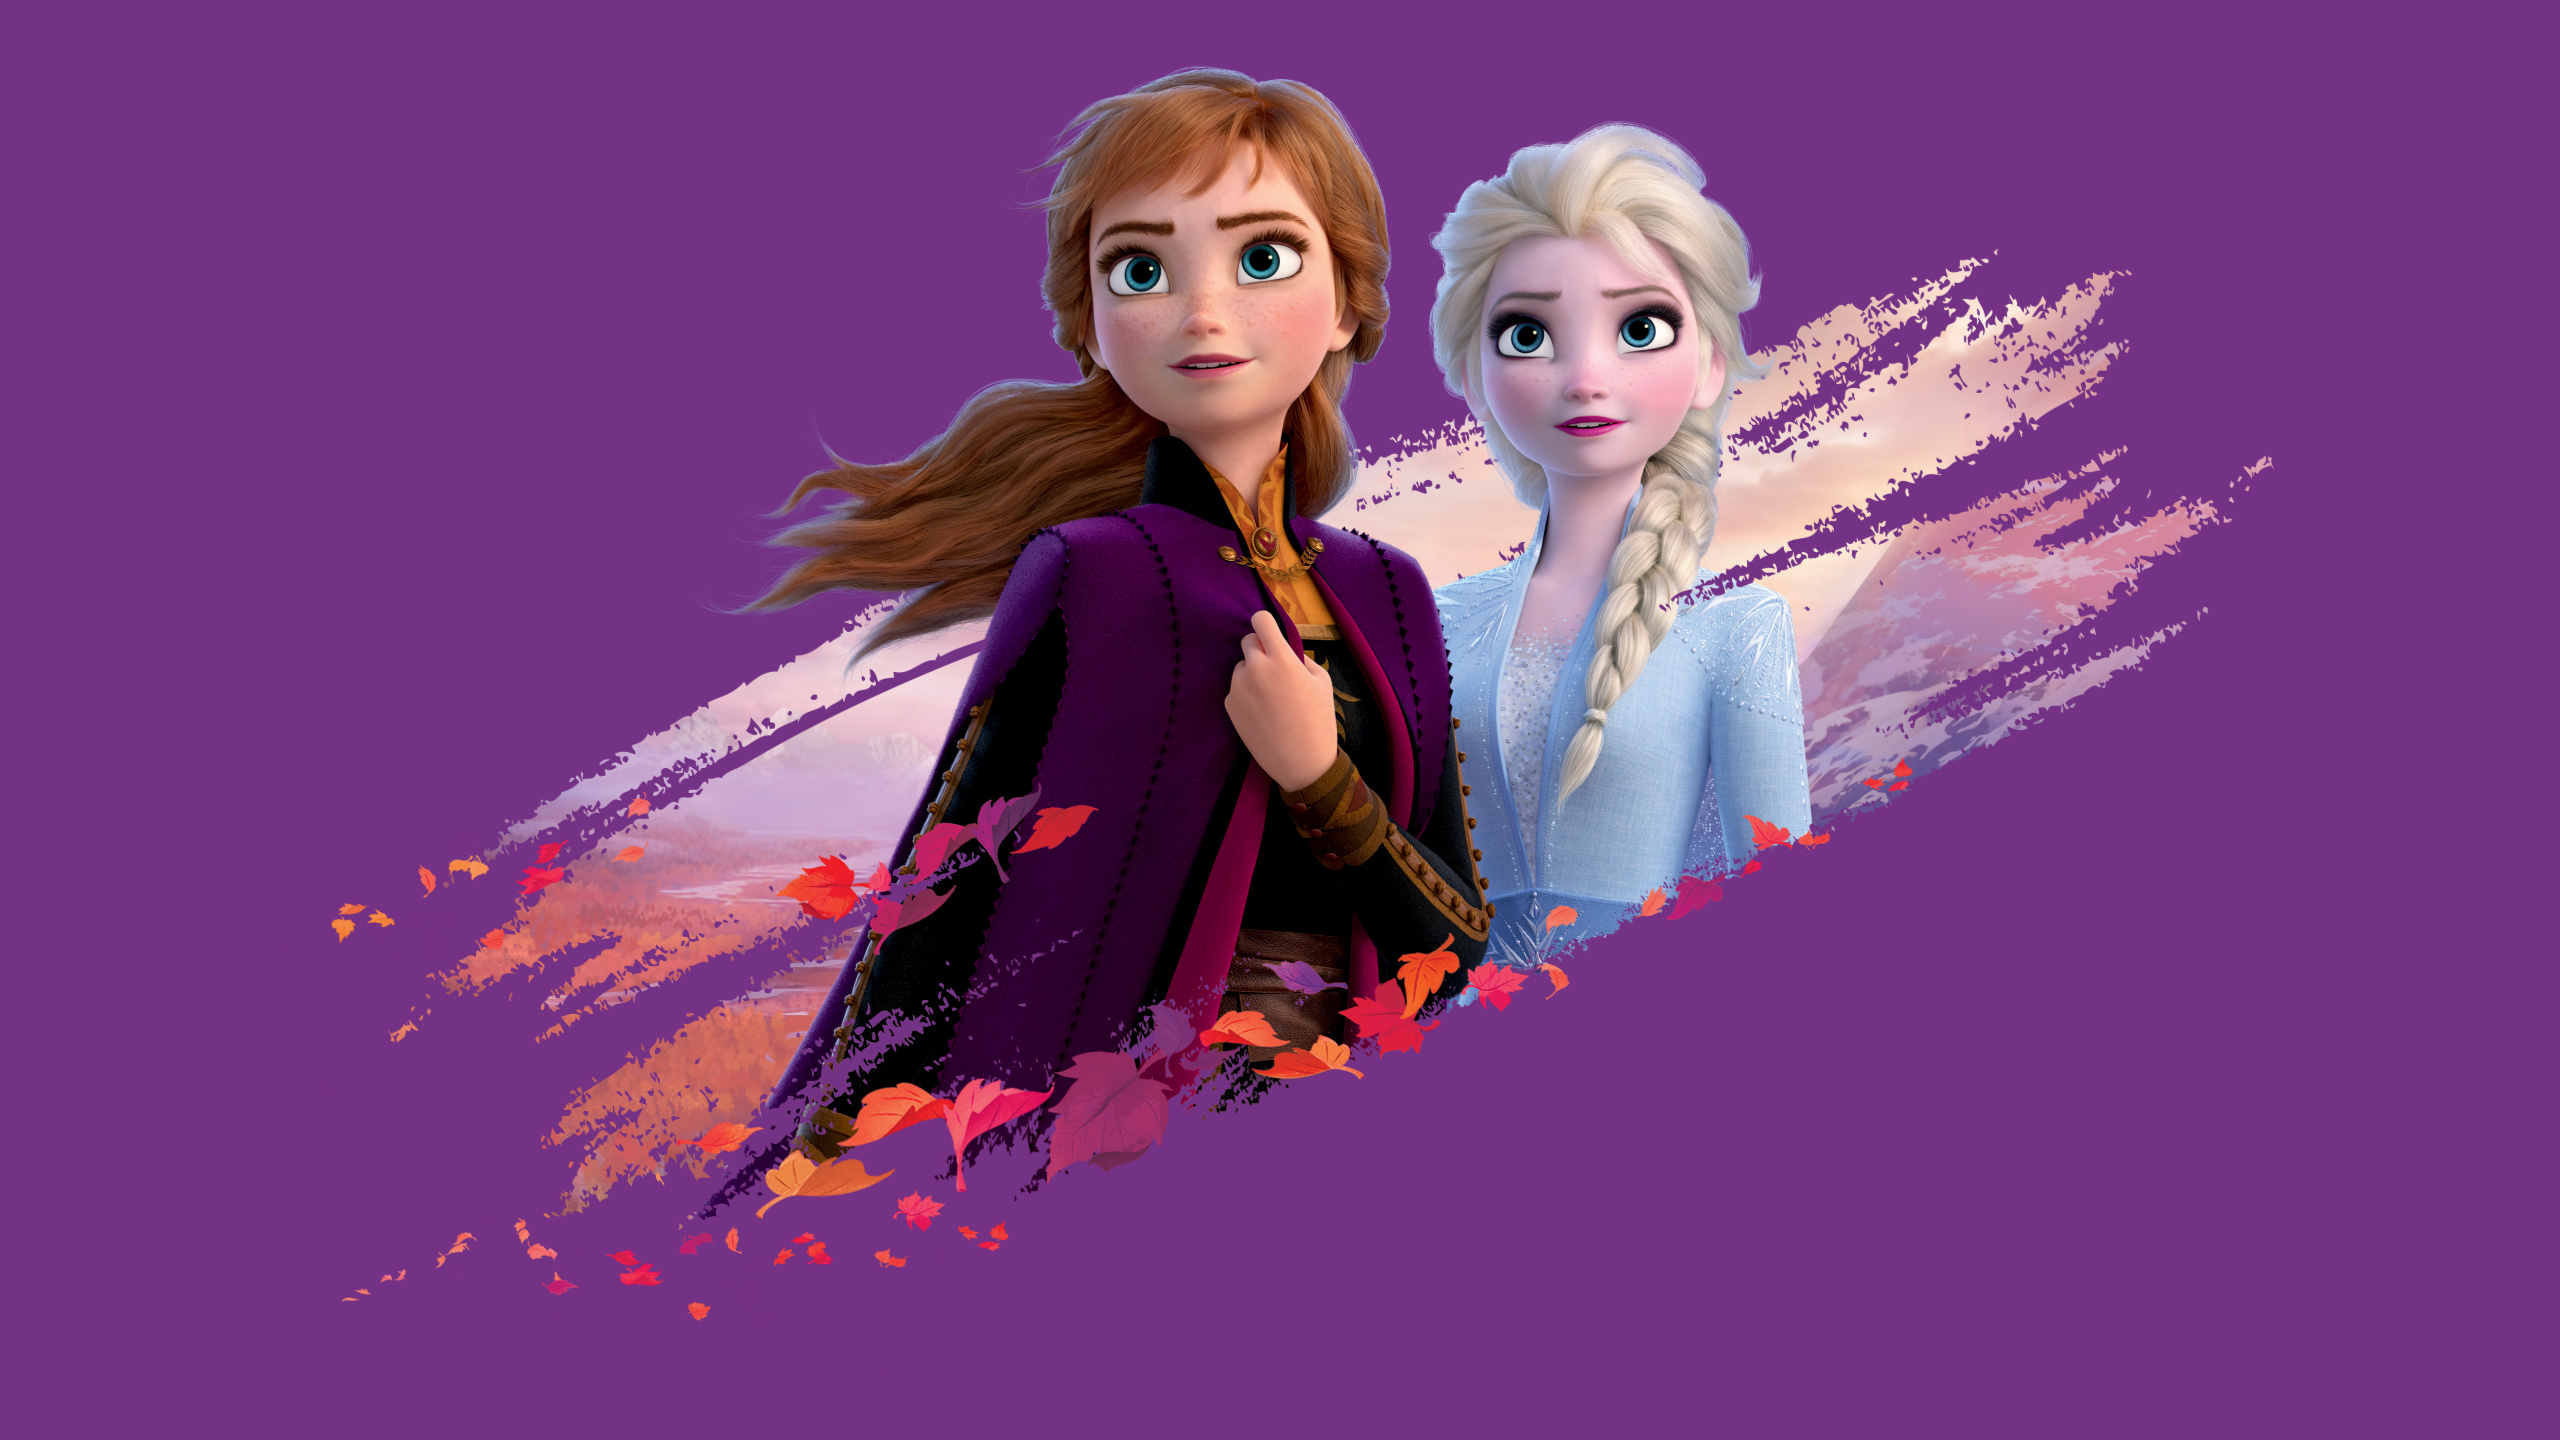 Queen Anna, Frozen Animation, Elsa and Anna wallpaper, Disney, 2560x1440 HD Desktop